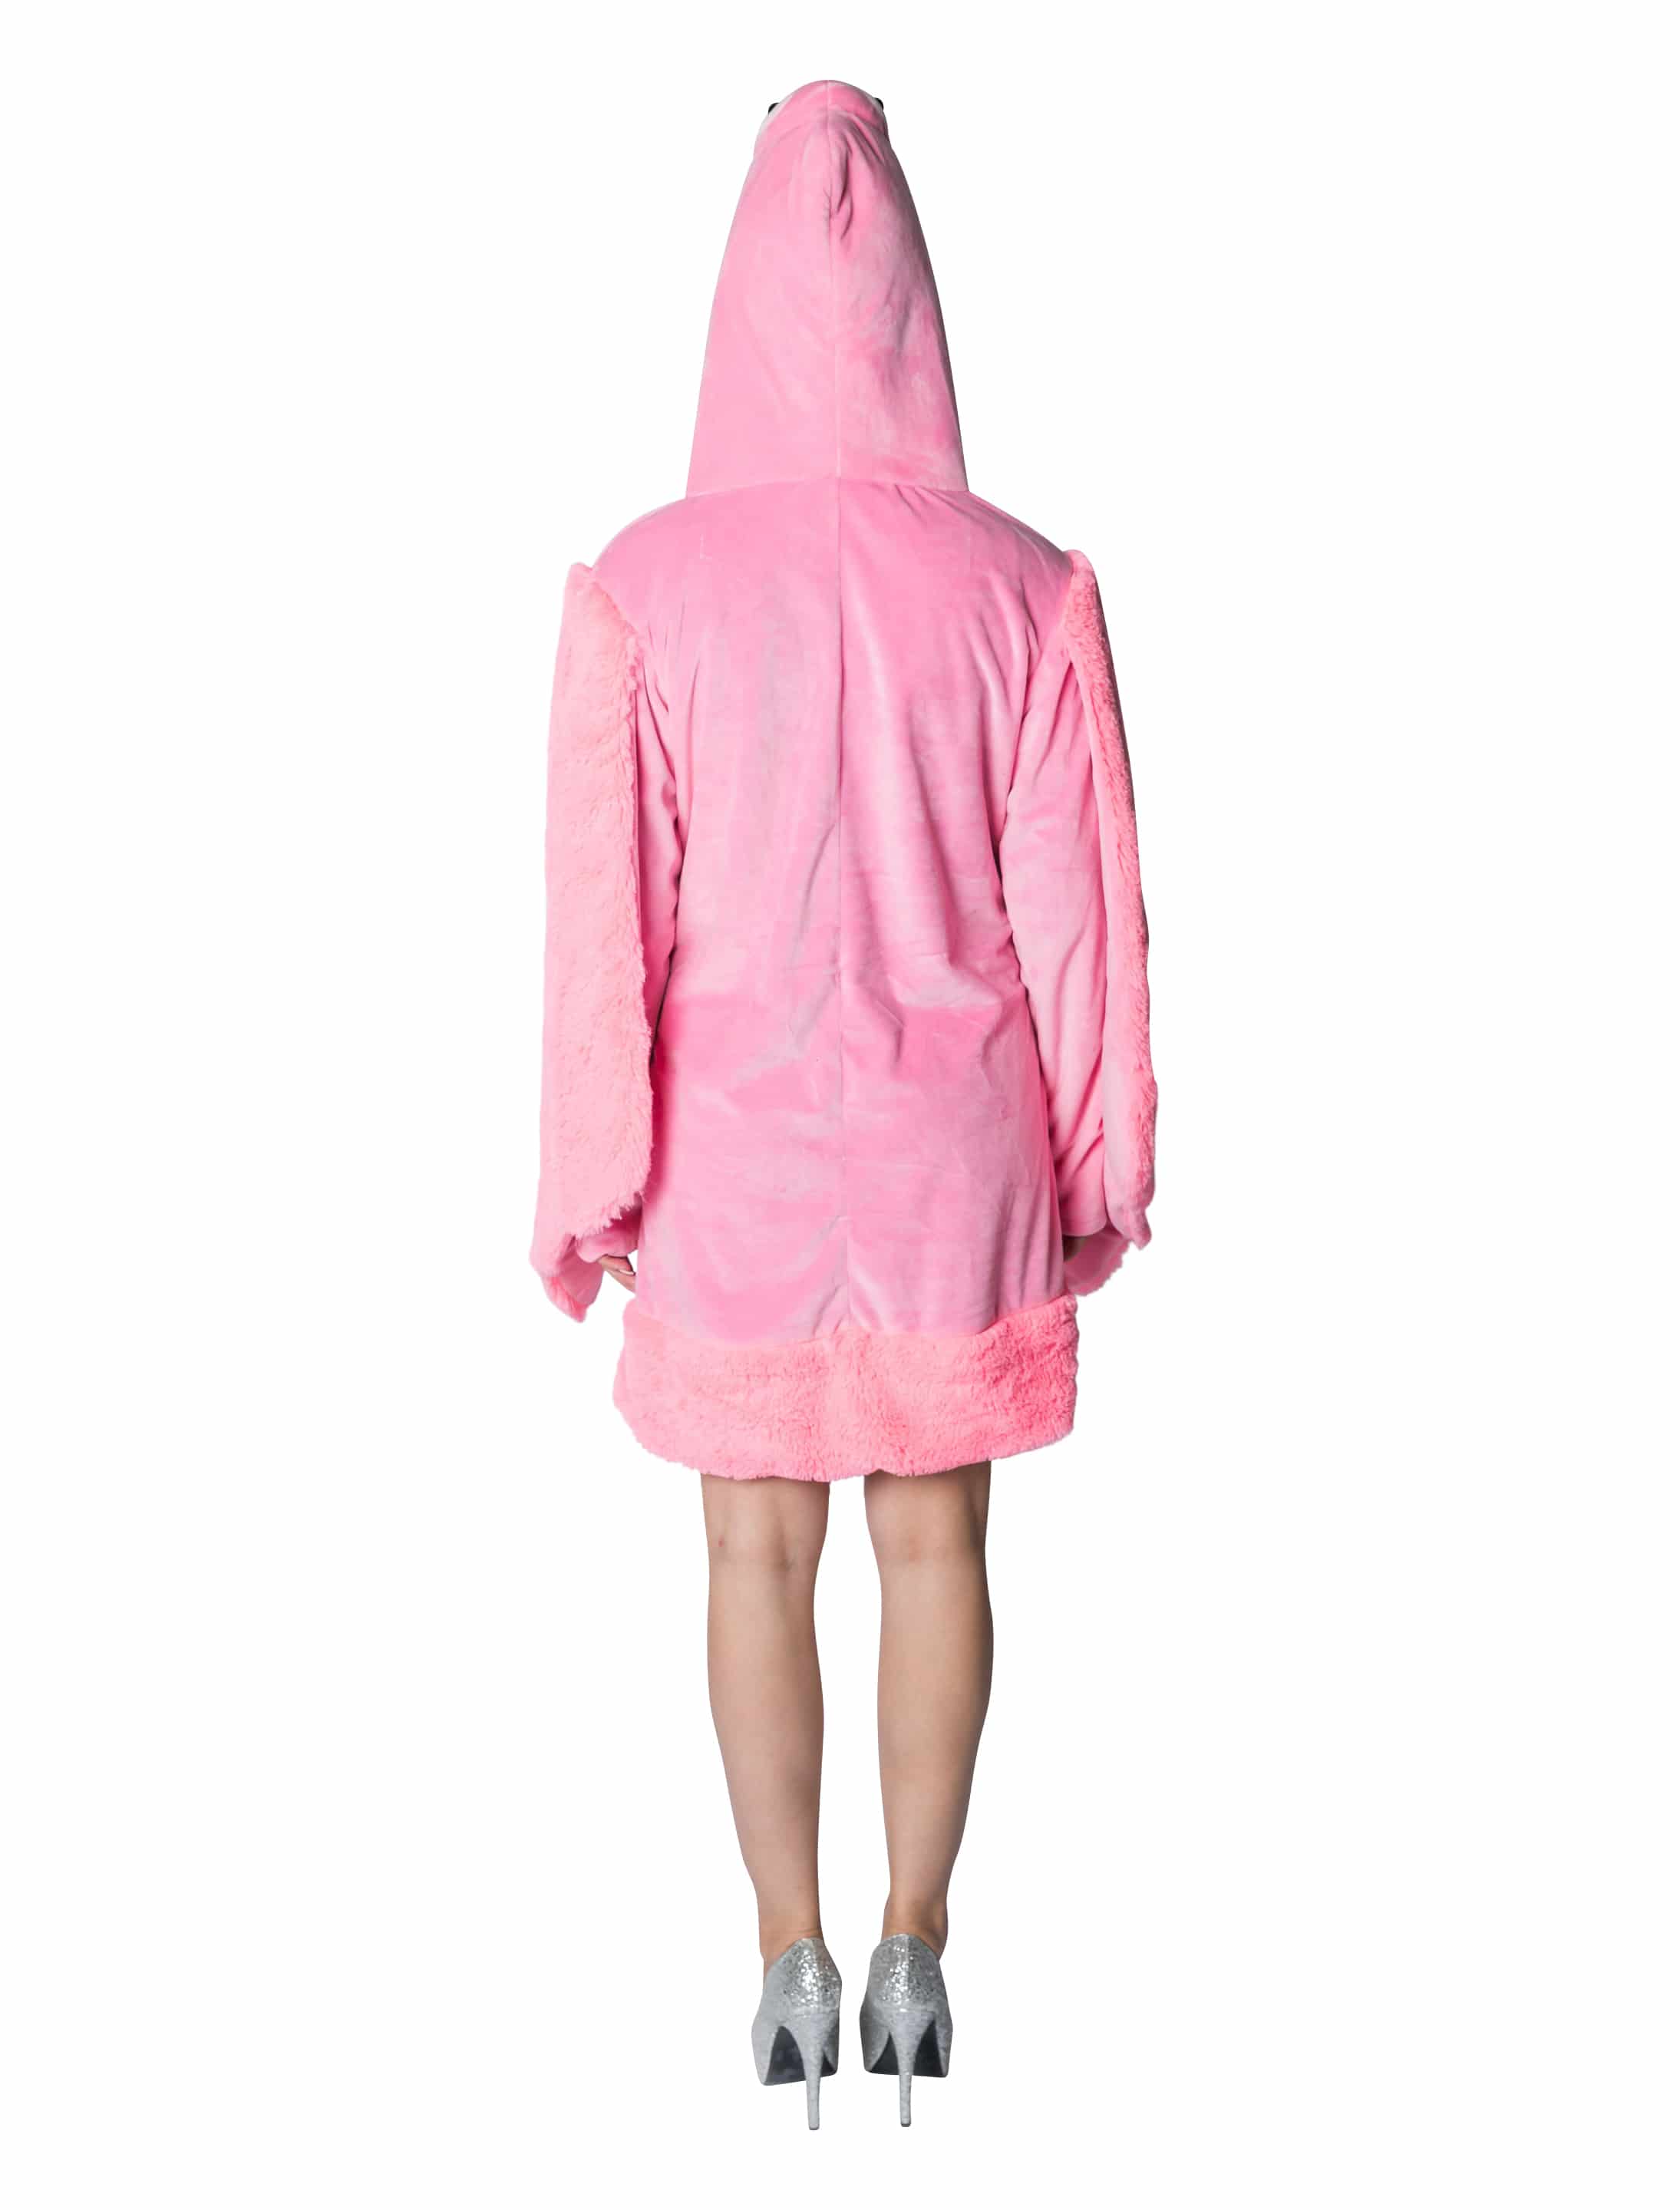 Kleid Plüsch Flamingo Damen pink 34/36